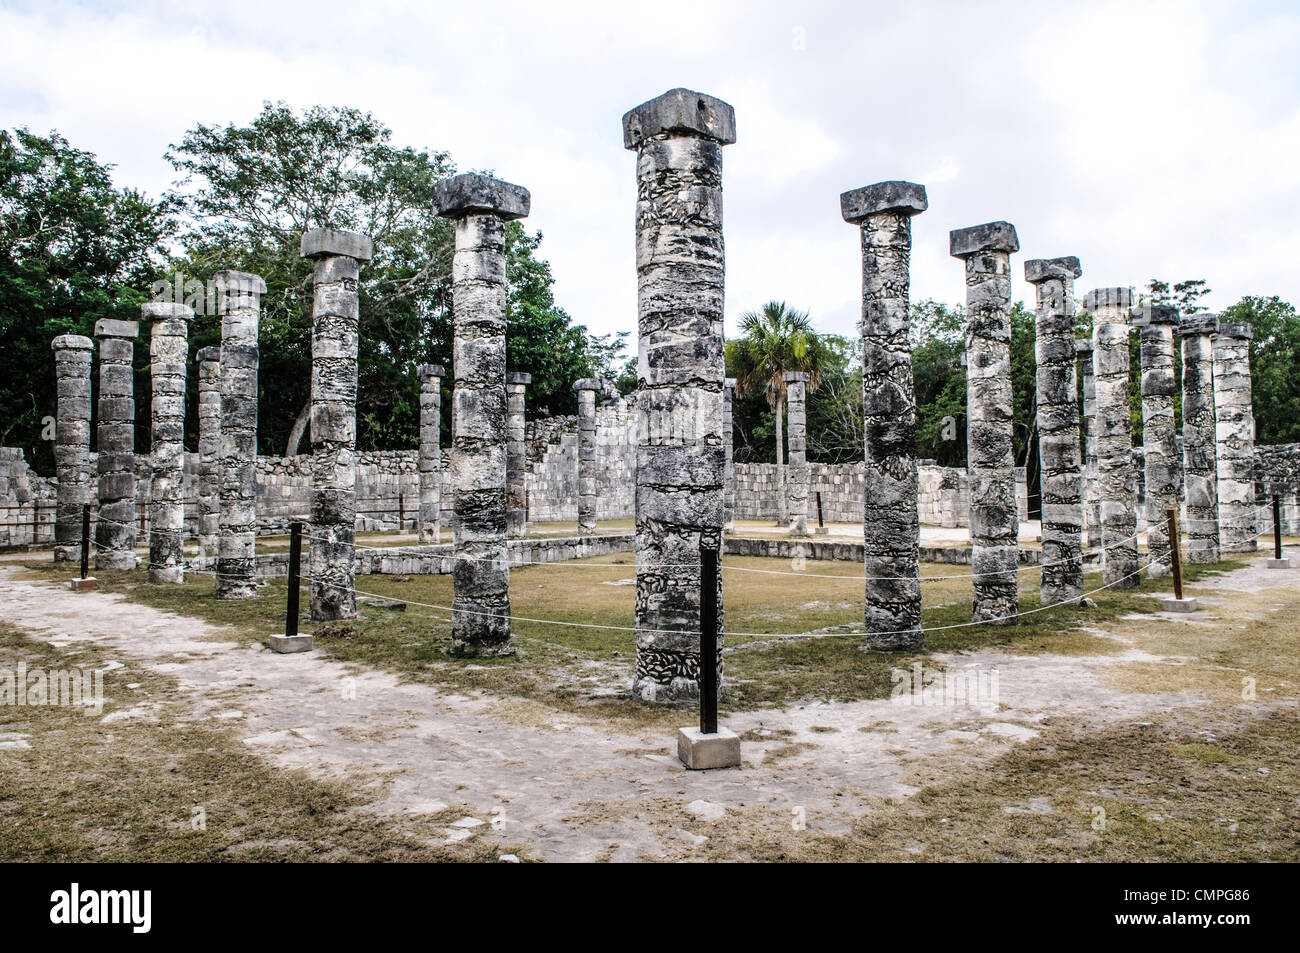 CHICHEN ITZA, Mexique - rangées de piliers de pierre, la place de la ligne 000 colonnes à Chichen Itza ruines Maya zone archéologique au cœur de la péninsule du Yucatan. Banque D'Images